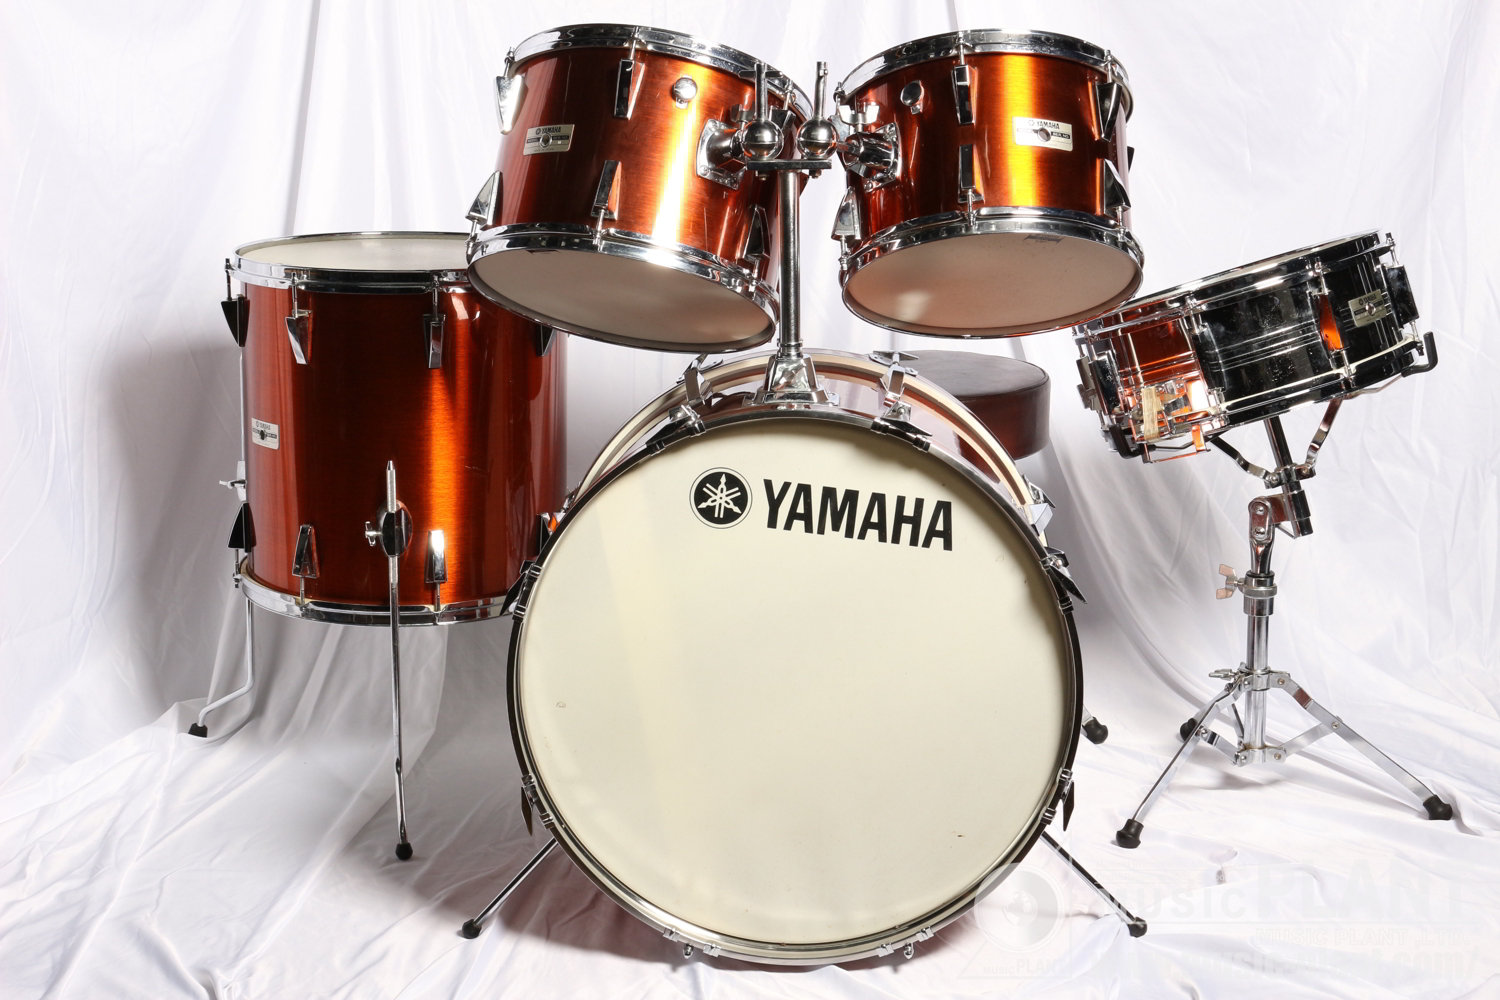 YAMAHA ドラムセットYD-5000 Series Drum Set中古在庫あります! MUSIC PLANT WEBSHOP